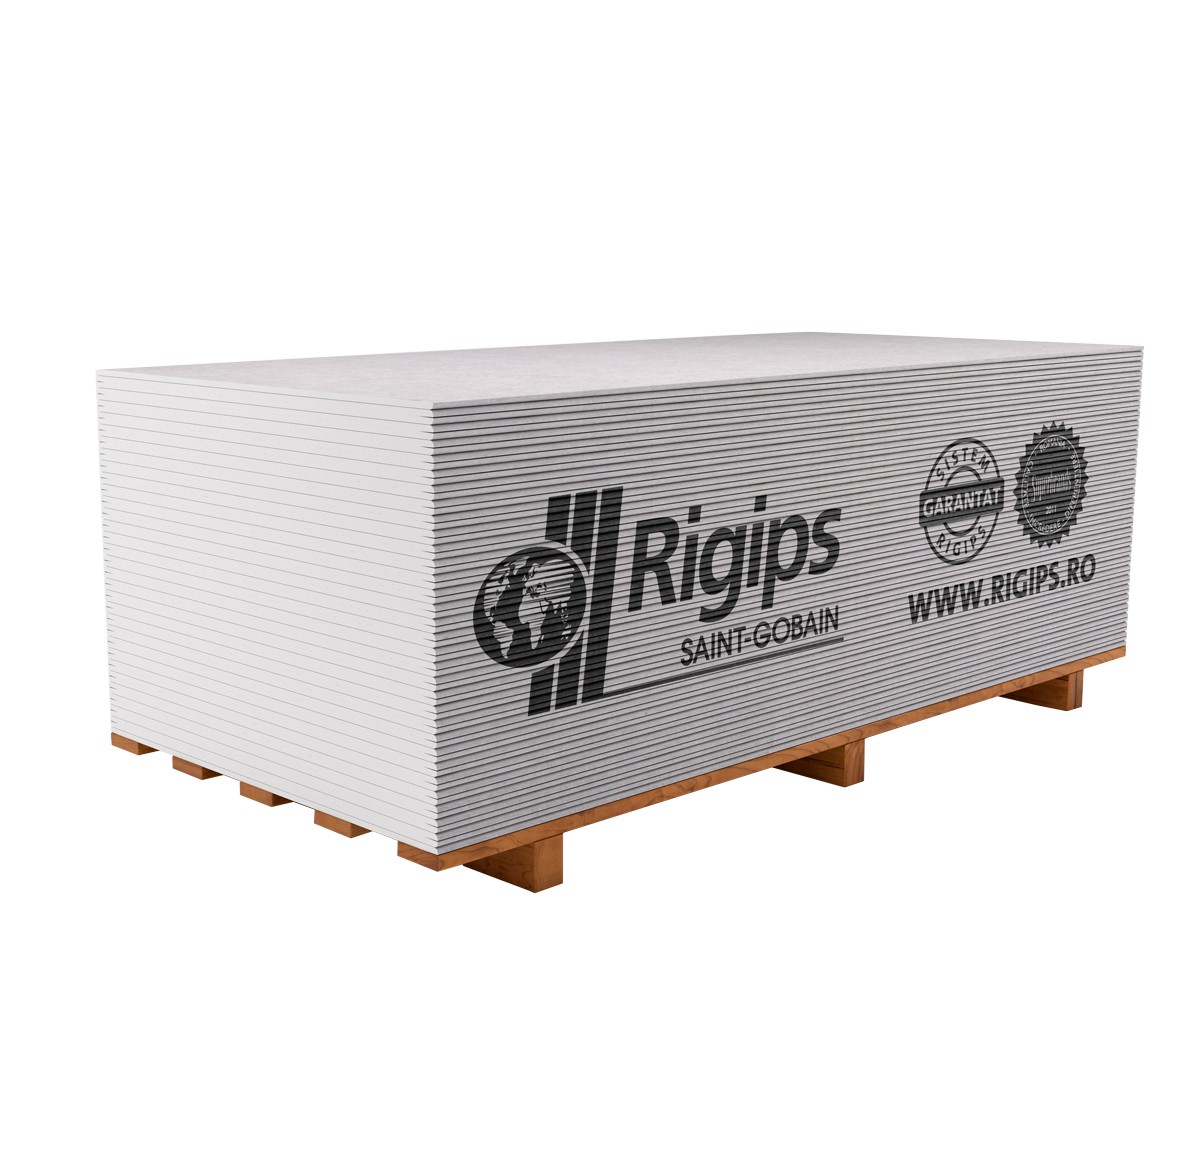 Gips-carton  9,5 RB (2,5*1,2) REGIPS